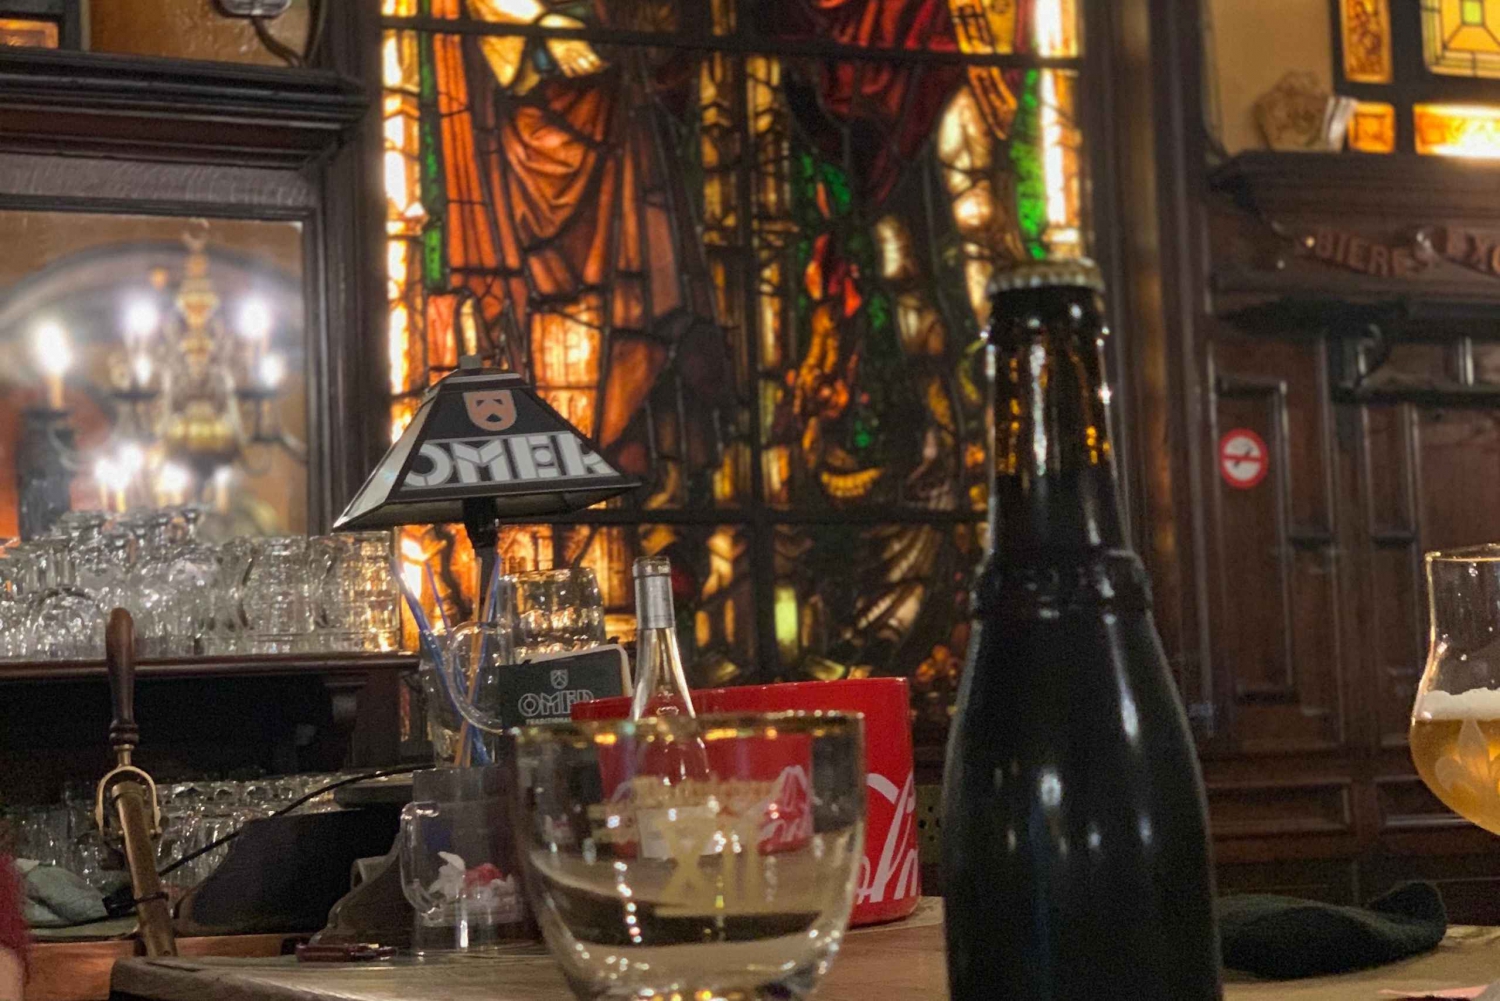 Bruksela: ekskluzywna wycieczka z czekoladą, piwem, goframi i whisky